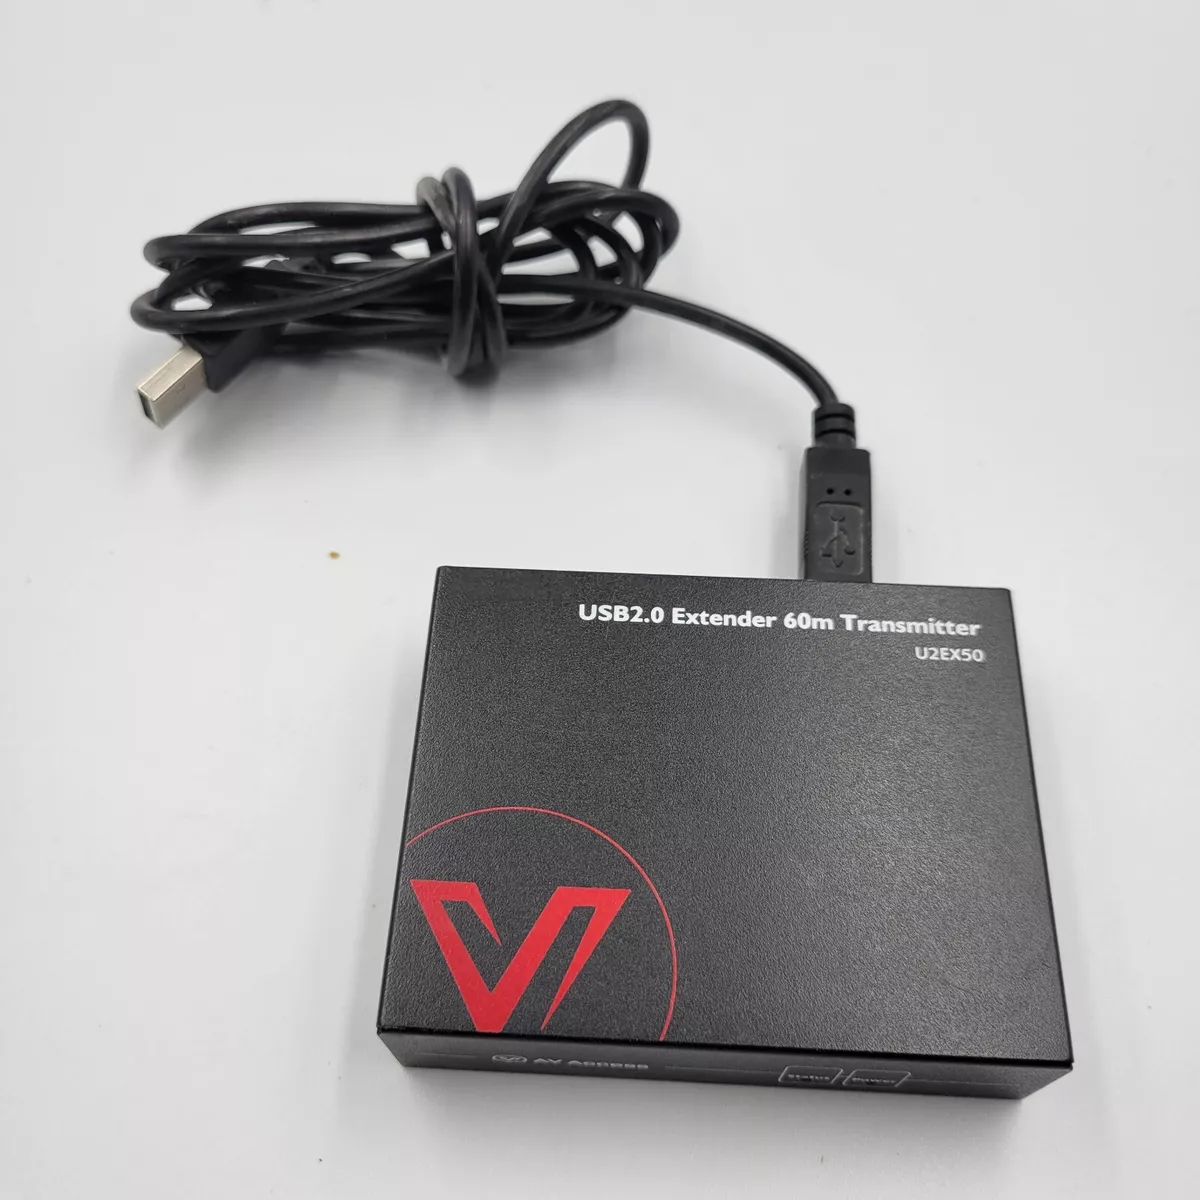 AV Access U2EX50 USB 2.0 Extender Repeater 60m Transmitter USB HOST UTP OUT  | eBay